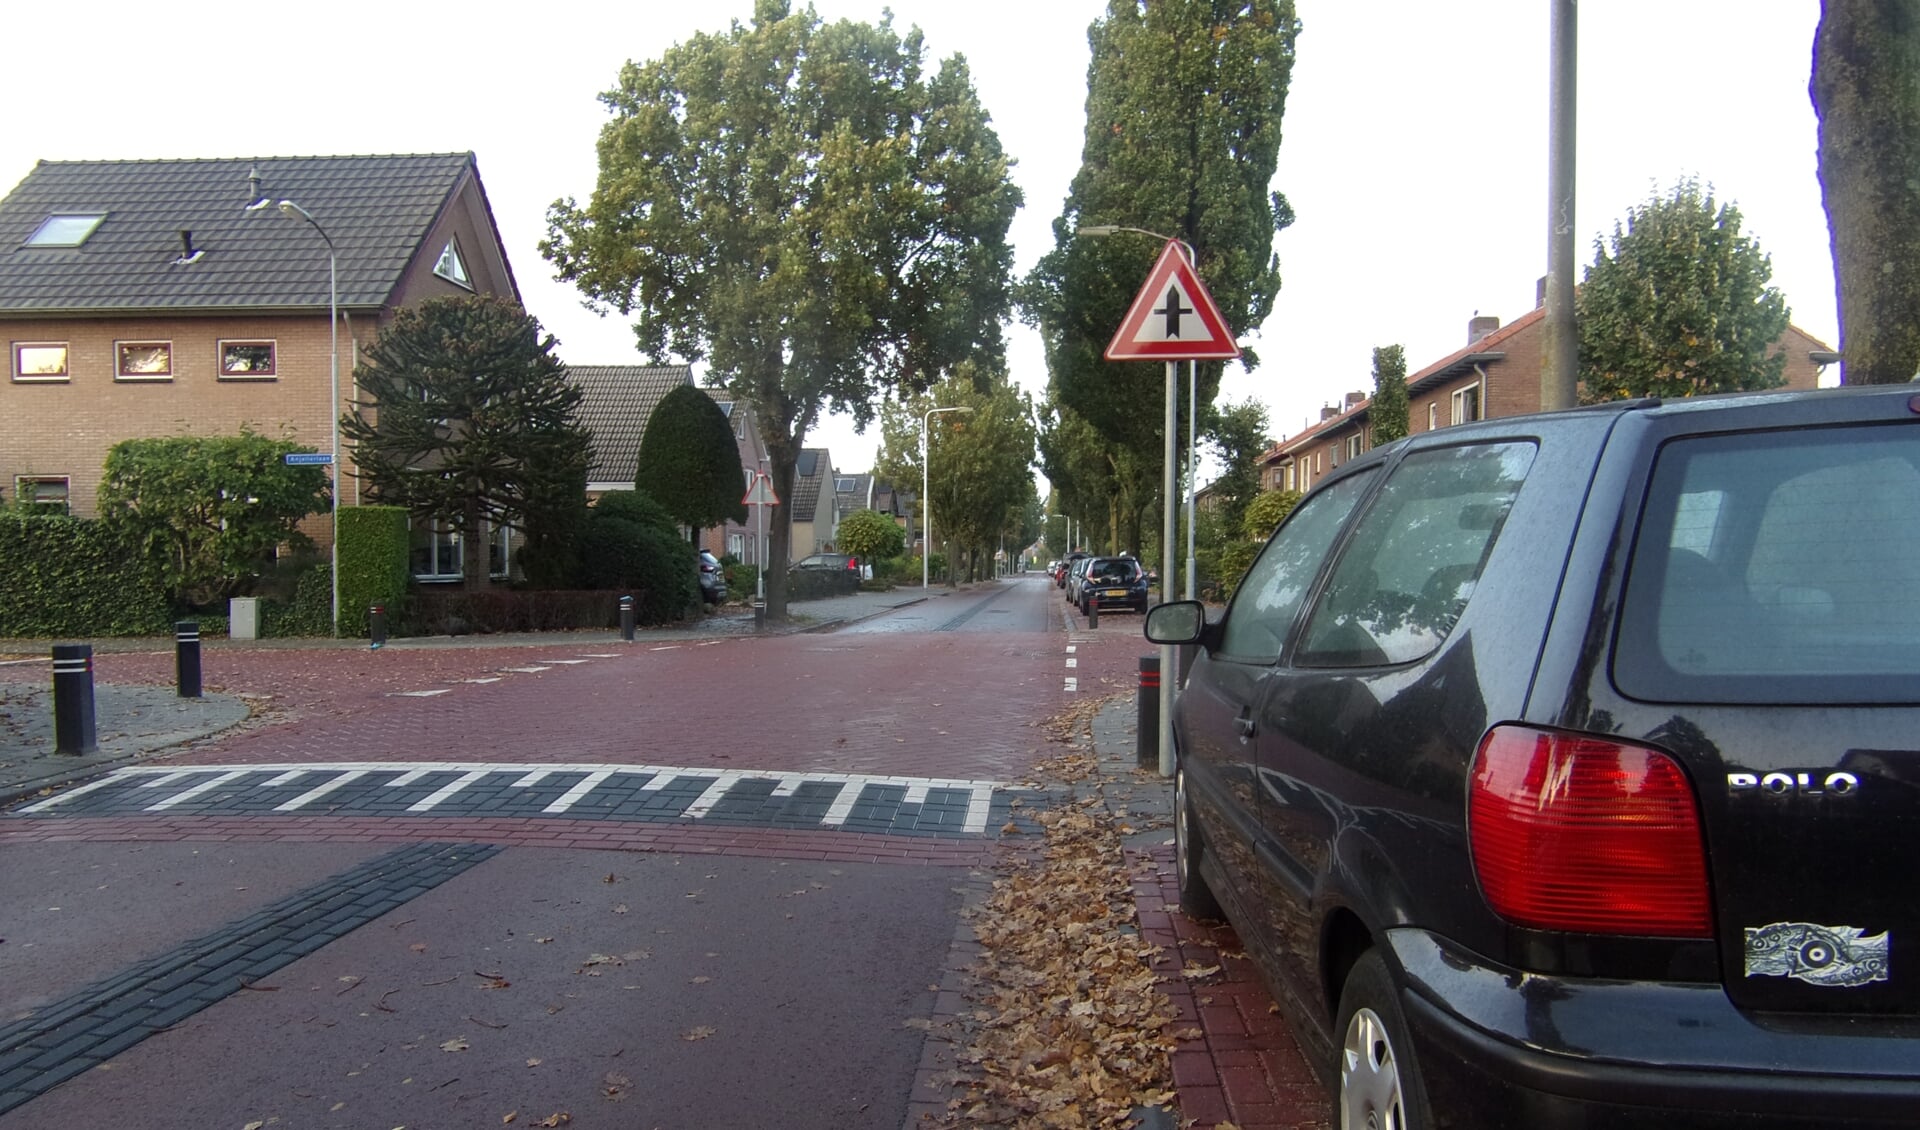 Hakselseweg (schoolroute) is fietsstraat geworden; auto’s zijn te gast.